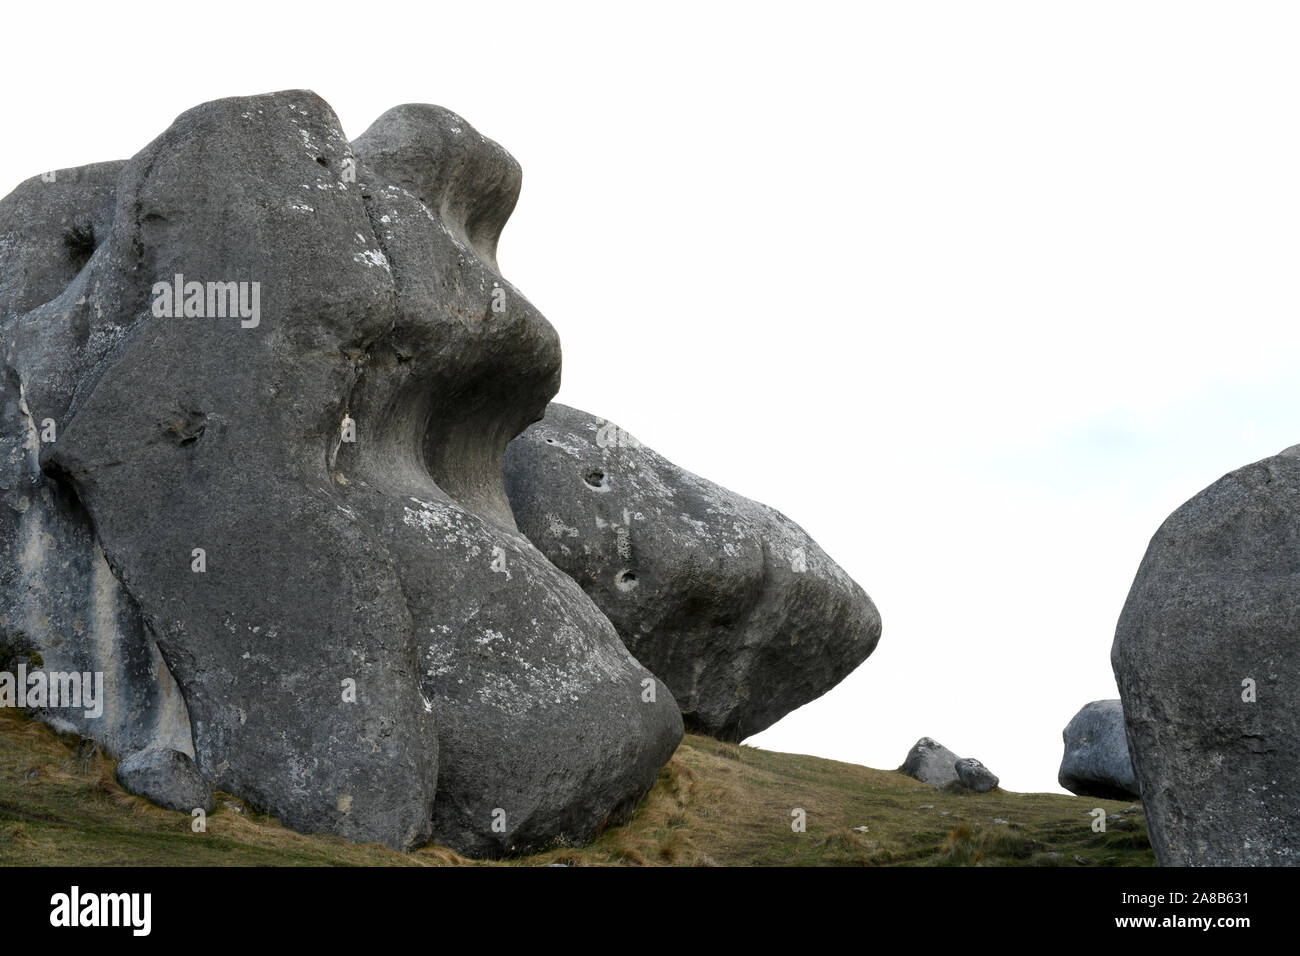 L'image plein cadre de roches calcaires à Castle Hill dans le sud de l'île de la Nouvelle-Zélande Banque D'Images